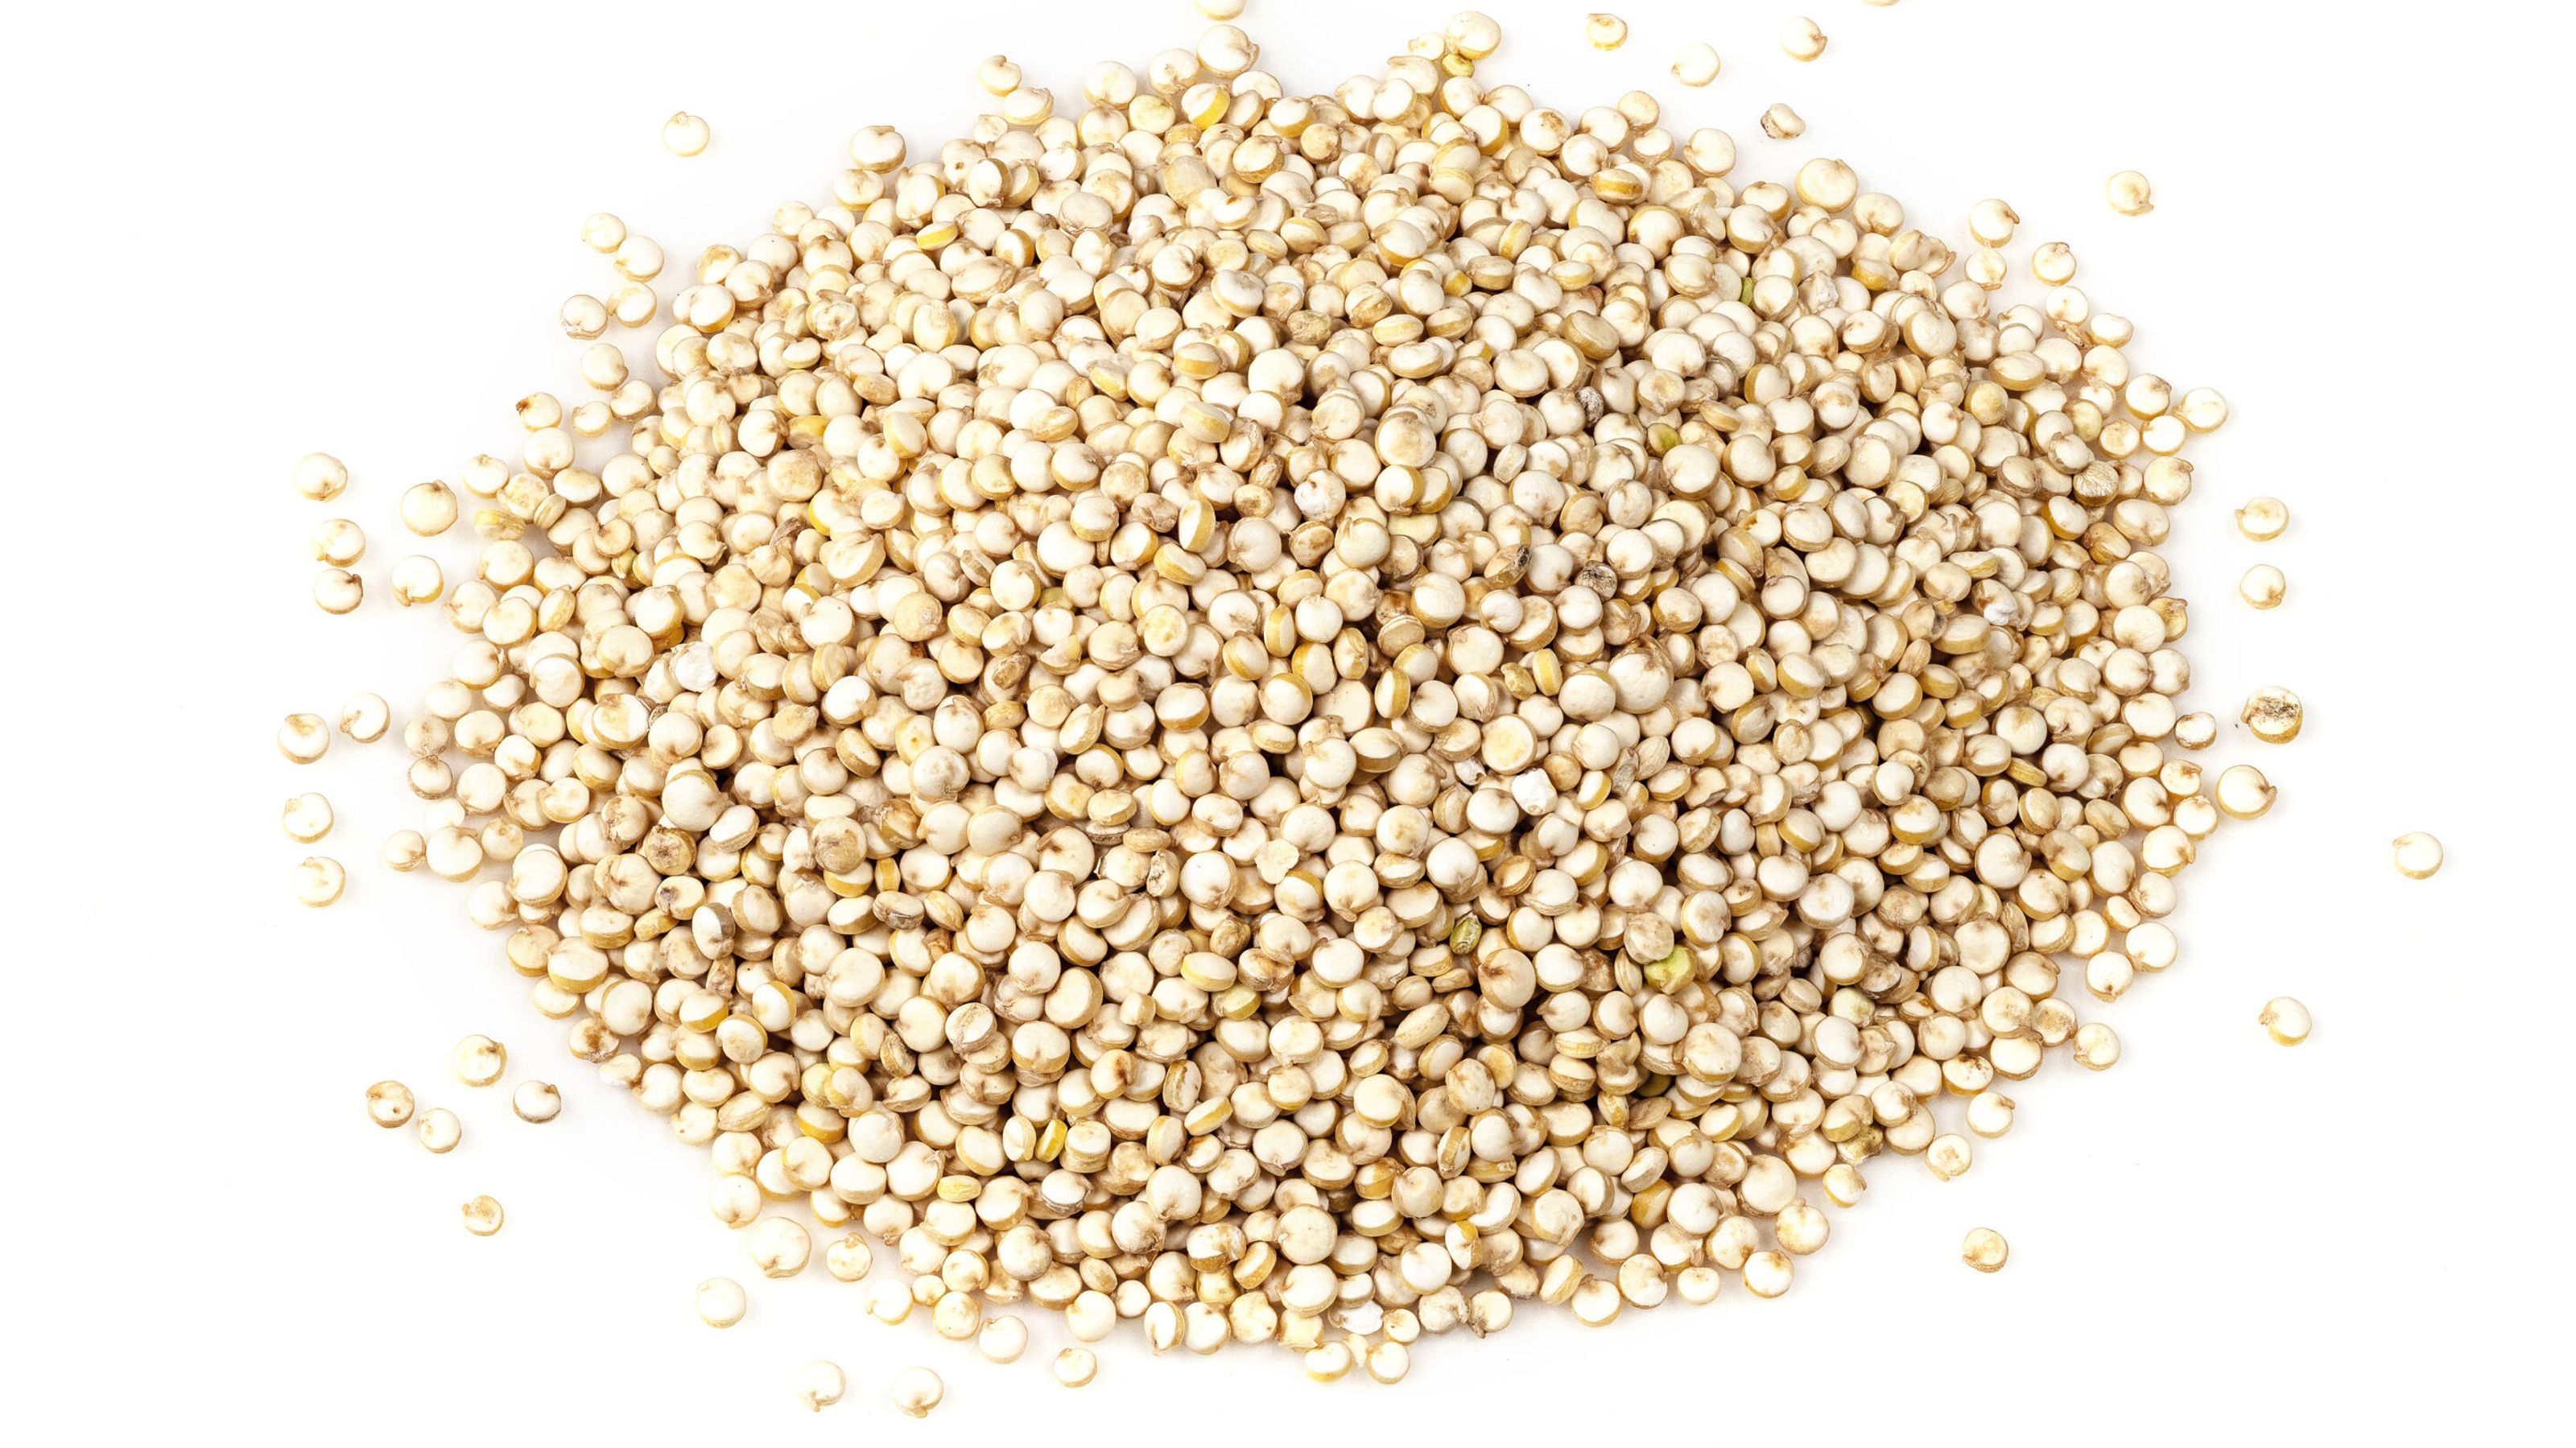 Pearled quinoa